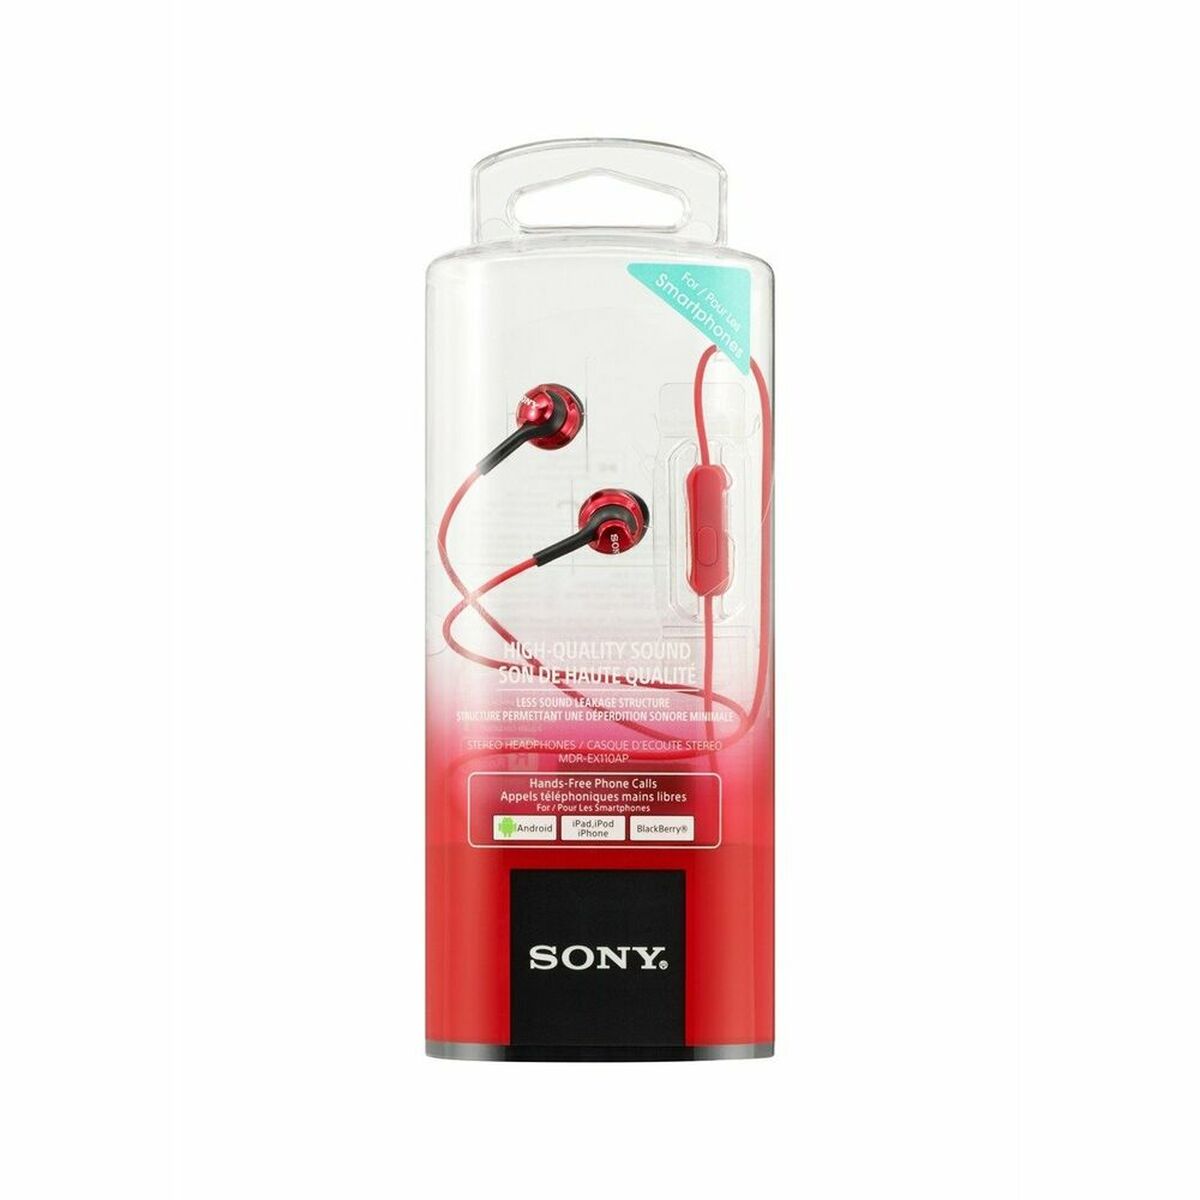 Auriculares Con Micrófono Sony Mdr-ex110ap - Rojo - Auriculares Con Micrófono  MKP